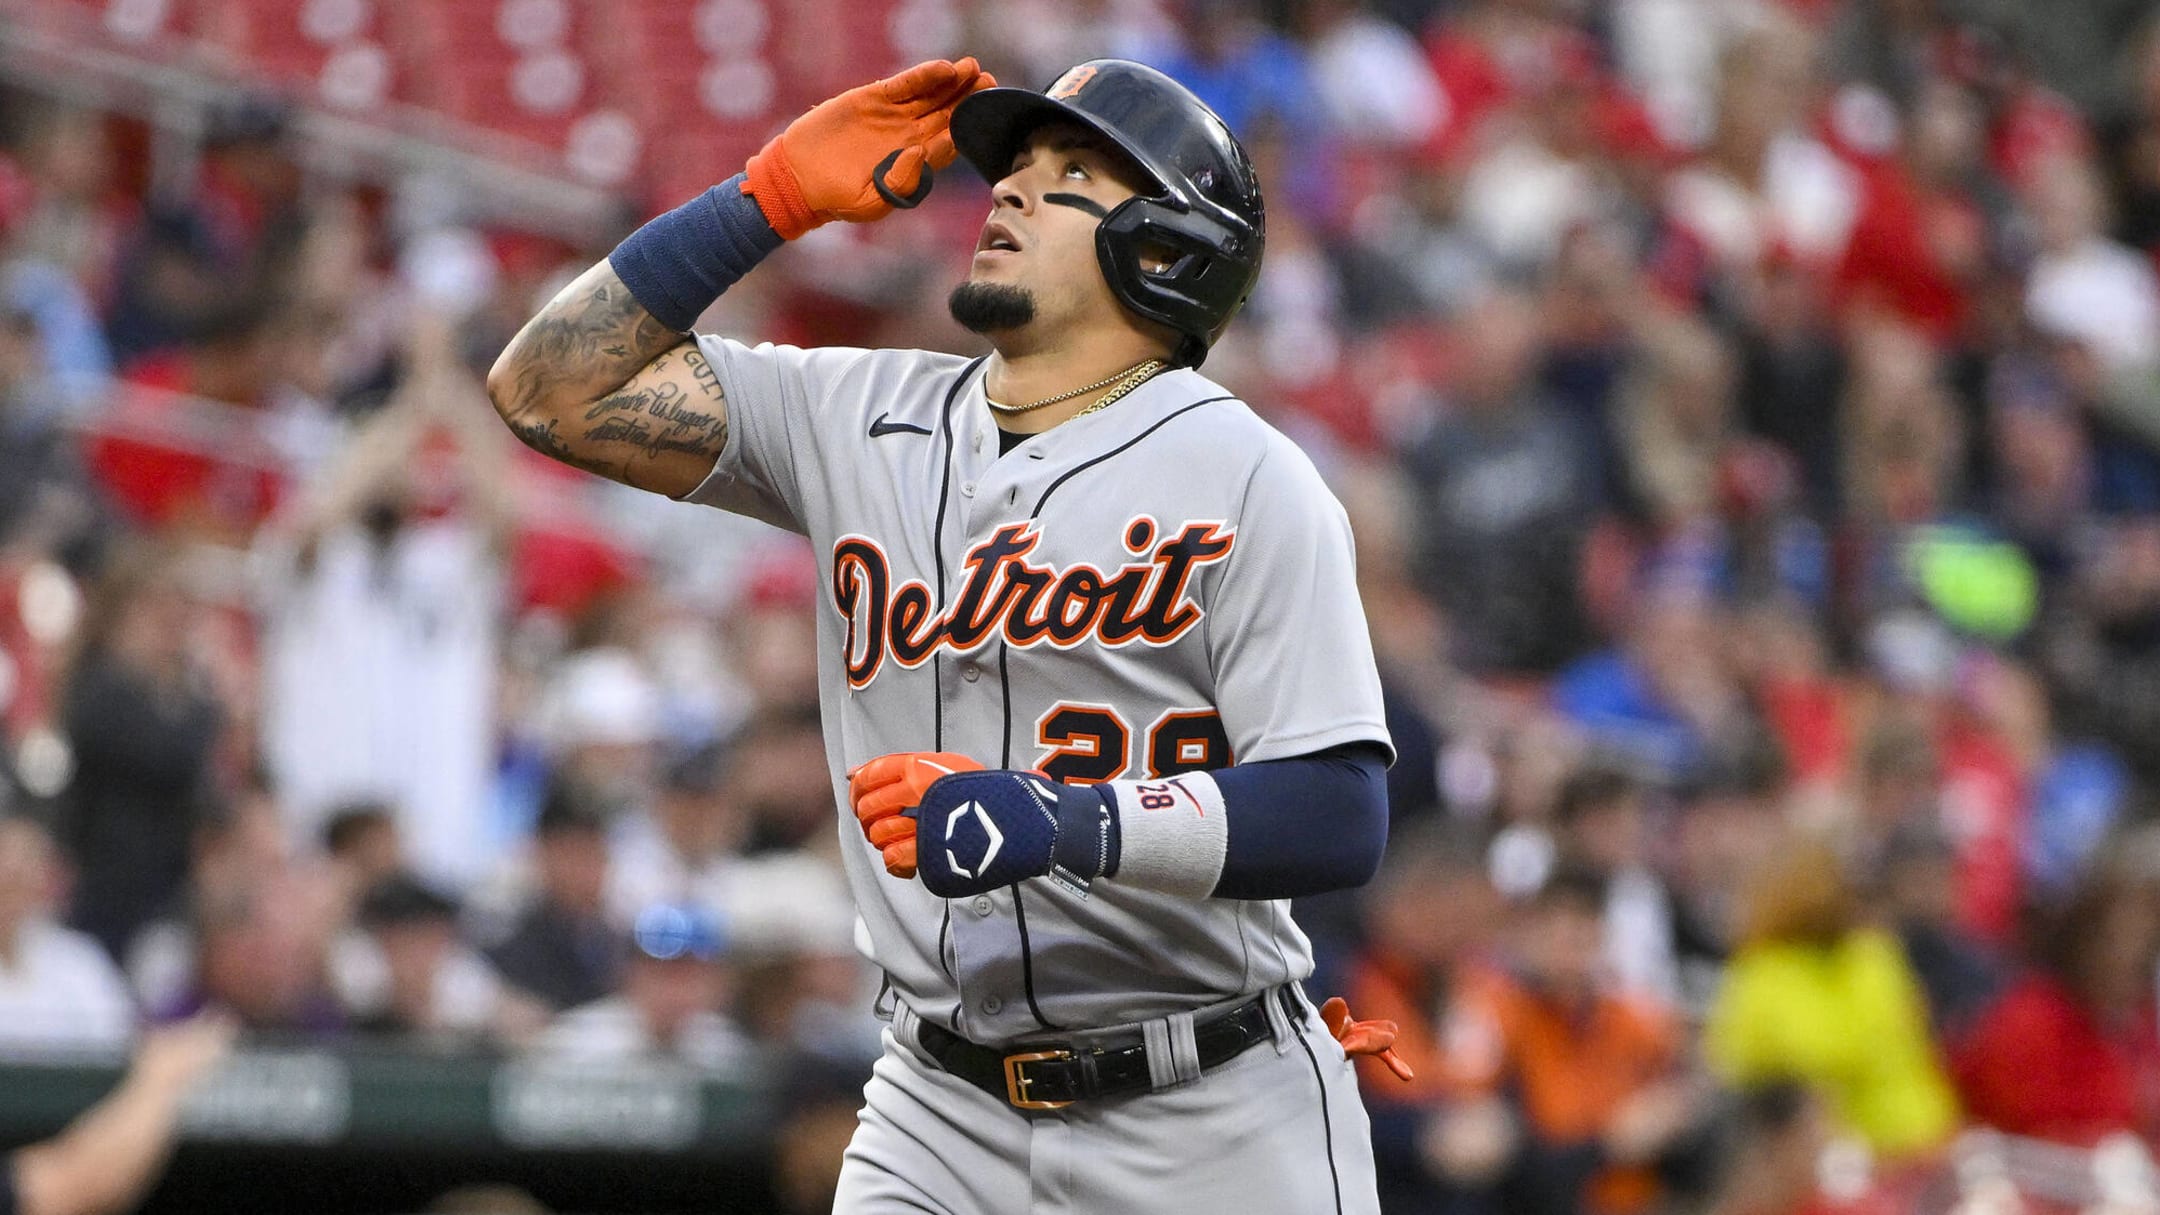 Should we be concerned about Detroit Tigers' shortstop Javier Baez?